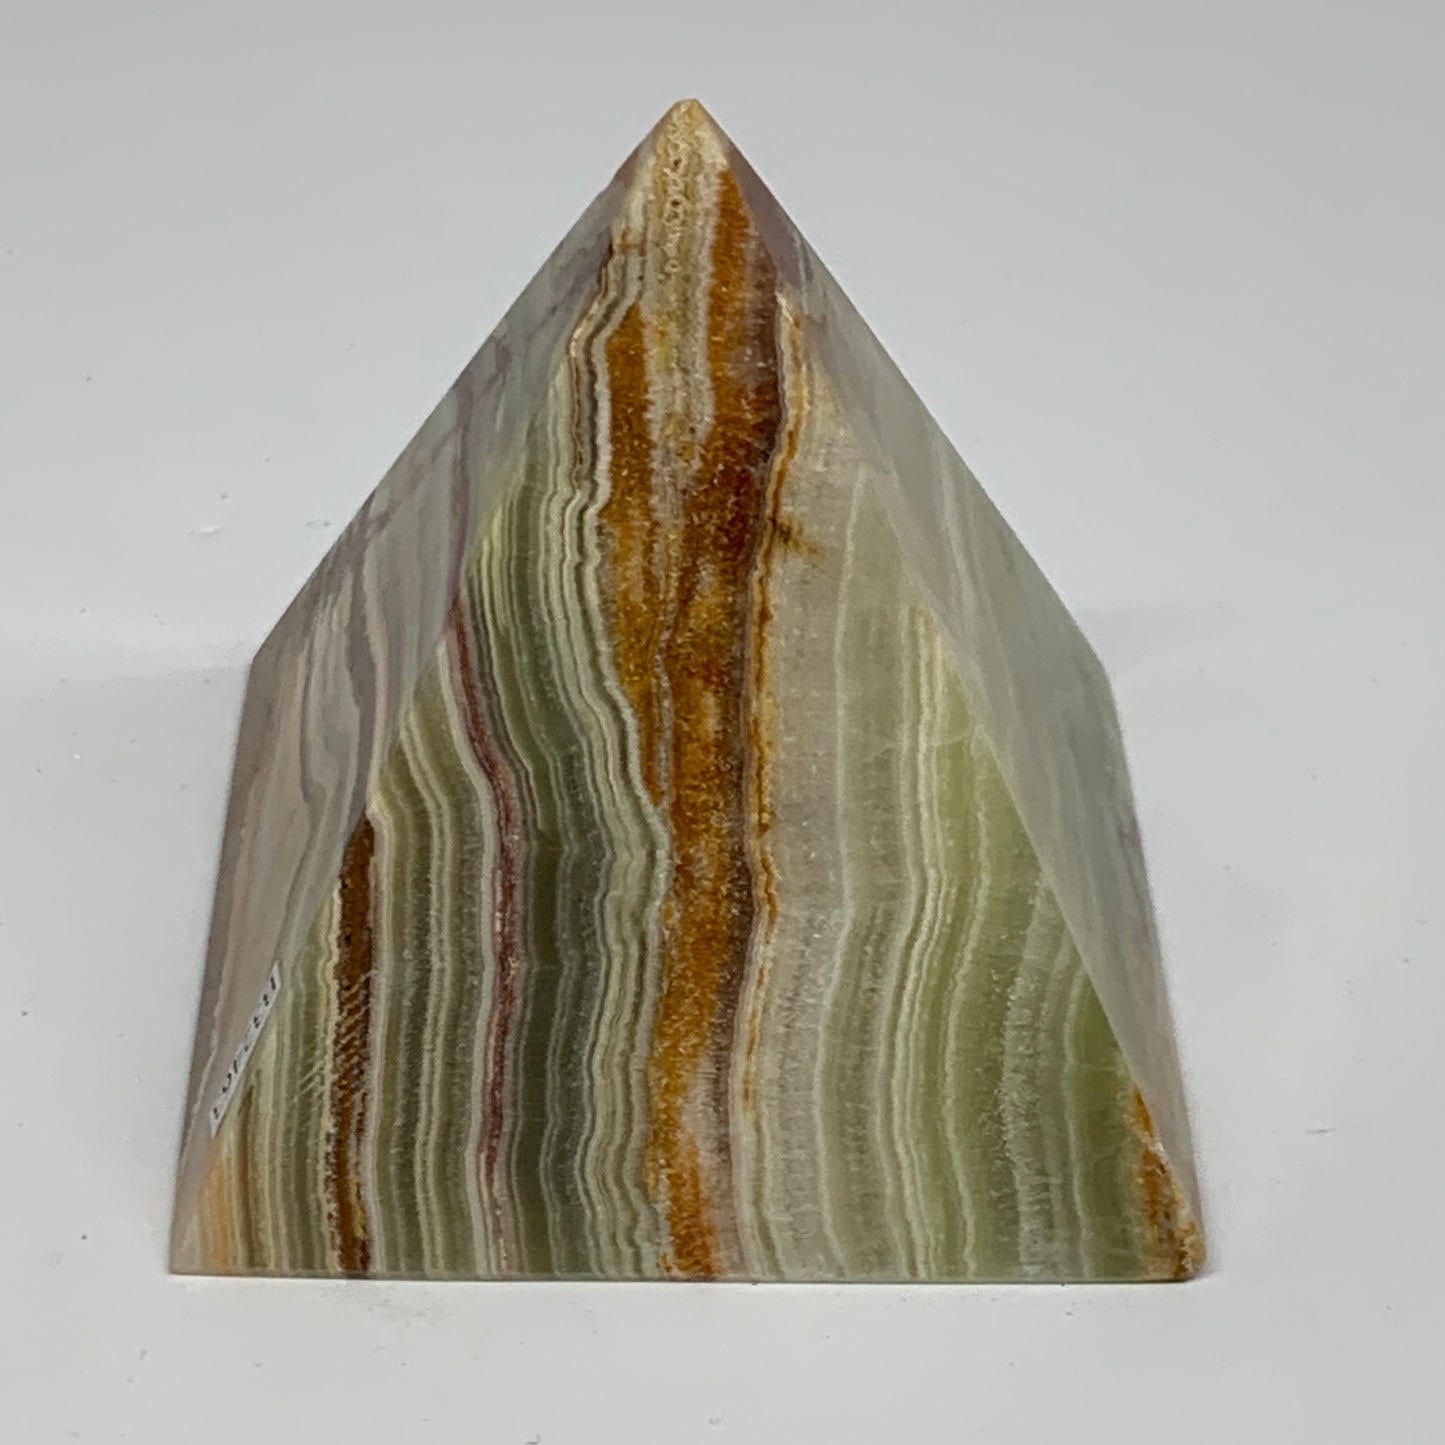 0.97 lbs, 3"x3"x3", Green Onyx Pyramid Gemstone Crystal, B32463